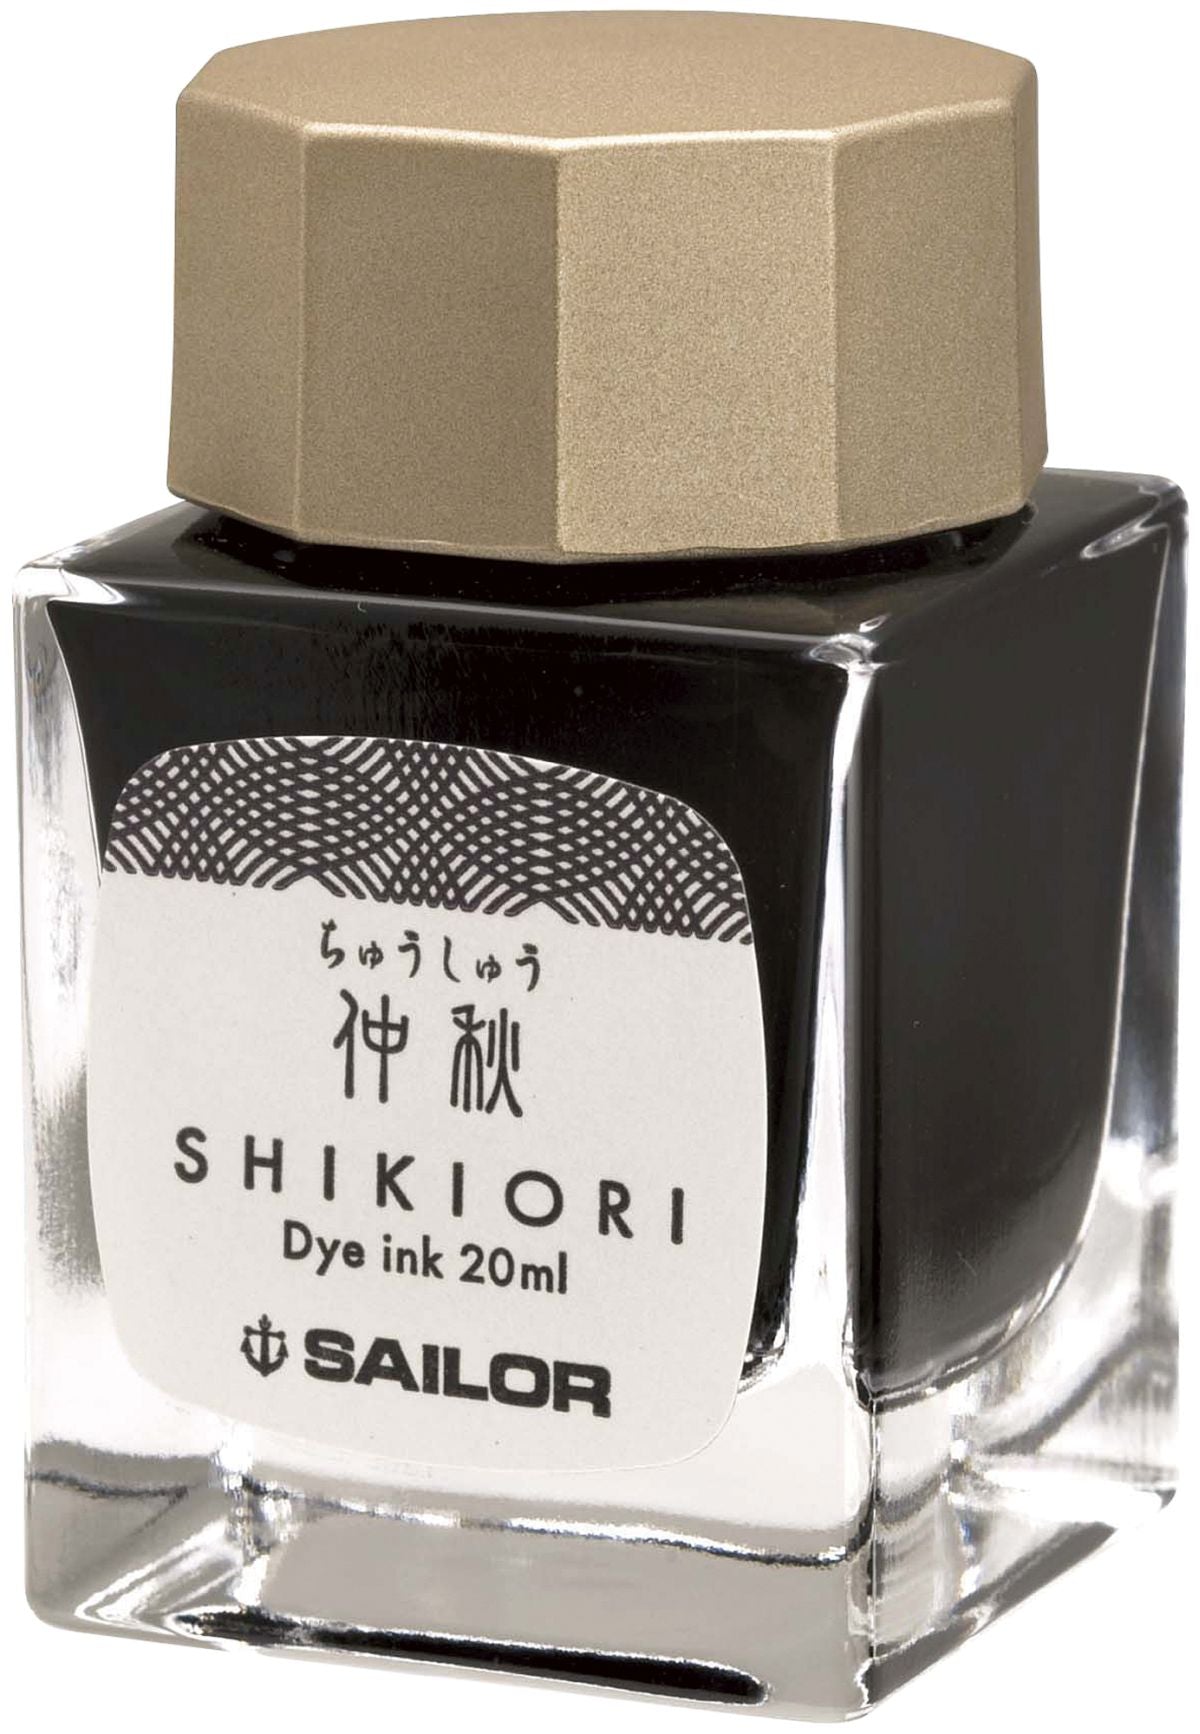 Sailor Shikiori - Chushu